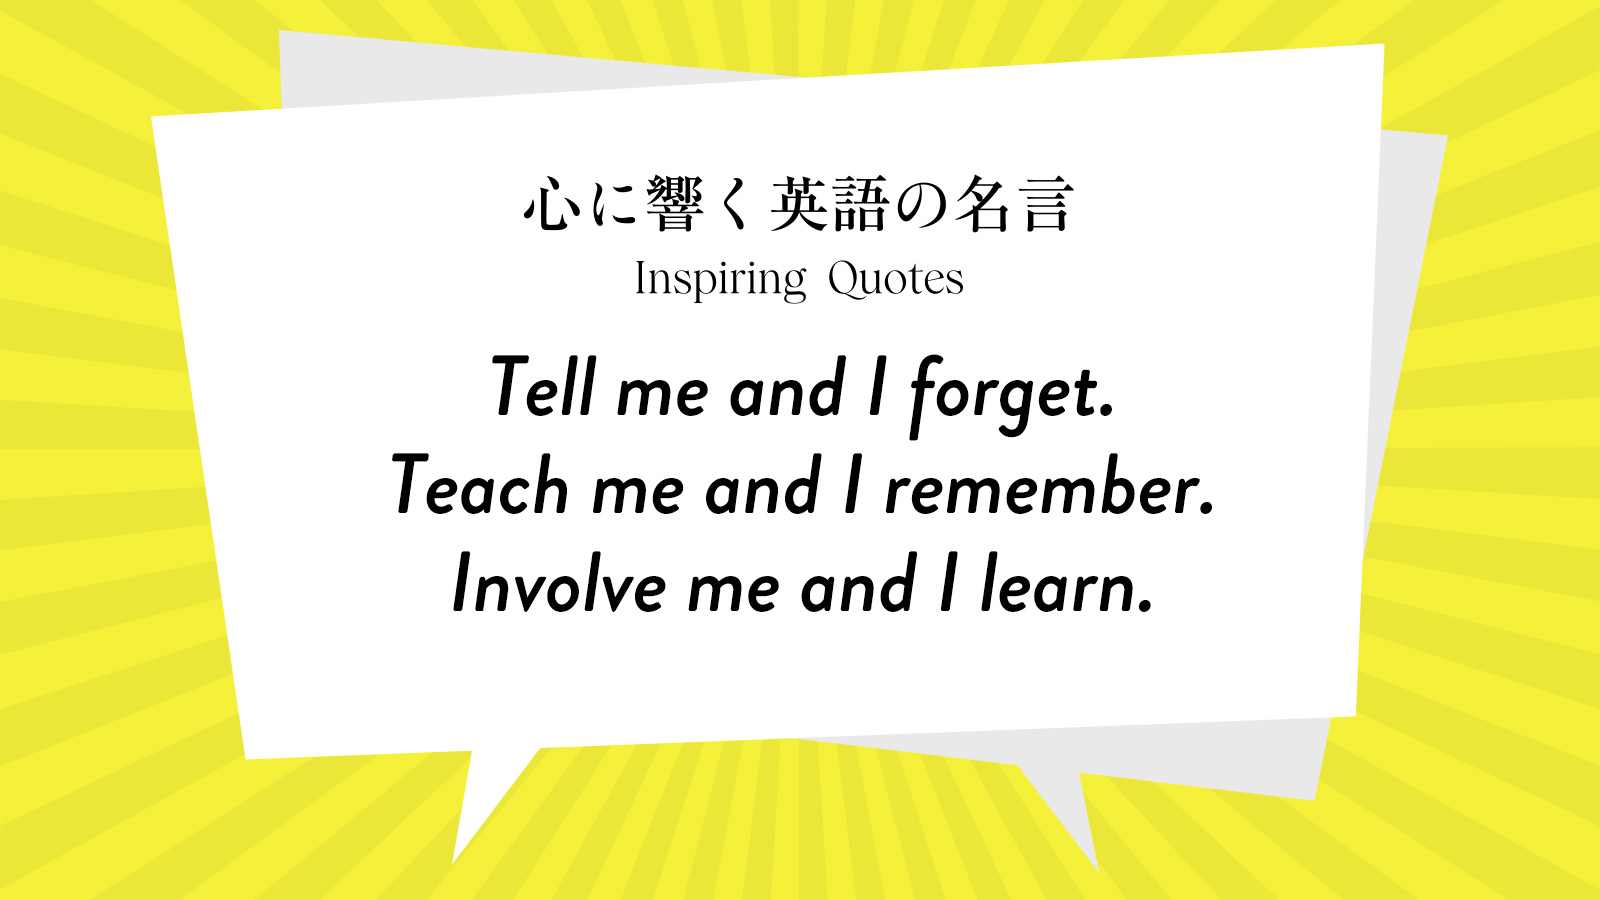 今週の名言 “Tell me and I forget. Teach me and I remember. Involve me and I learn.” | Inspiring Quotes: 心に響く英語の名言